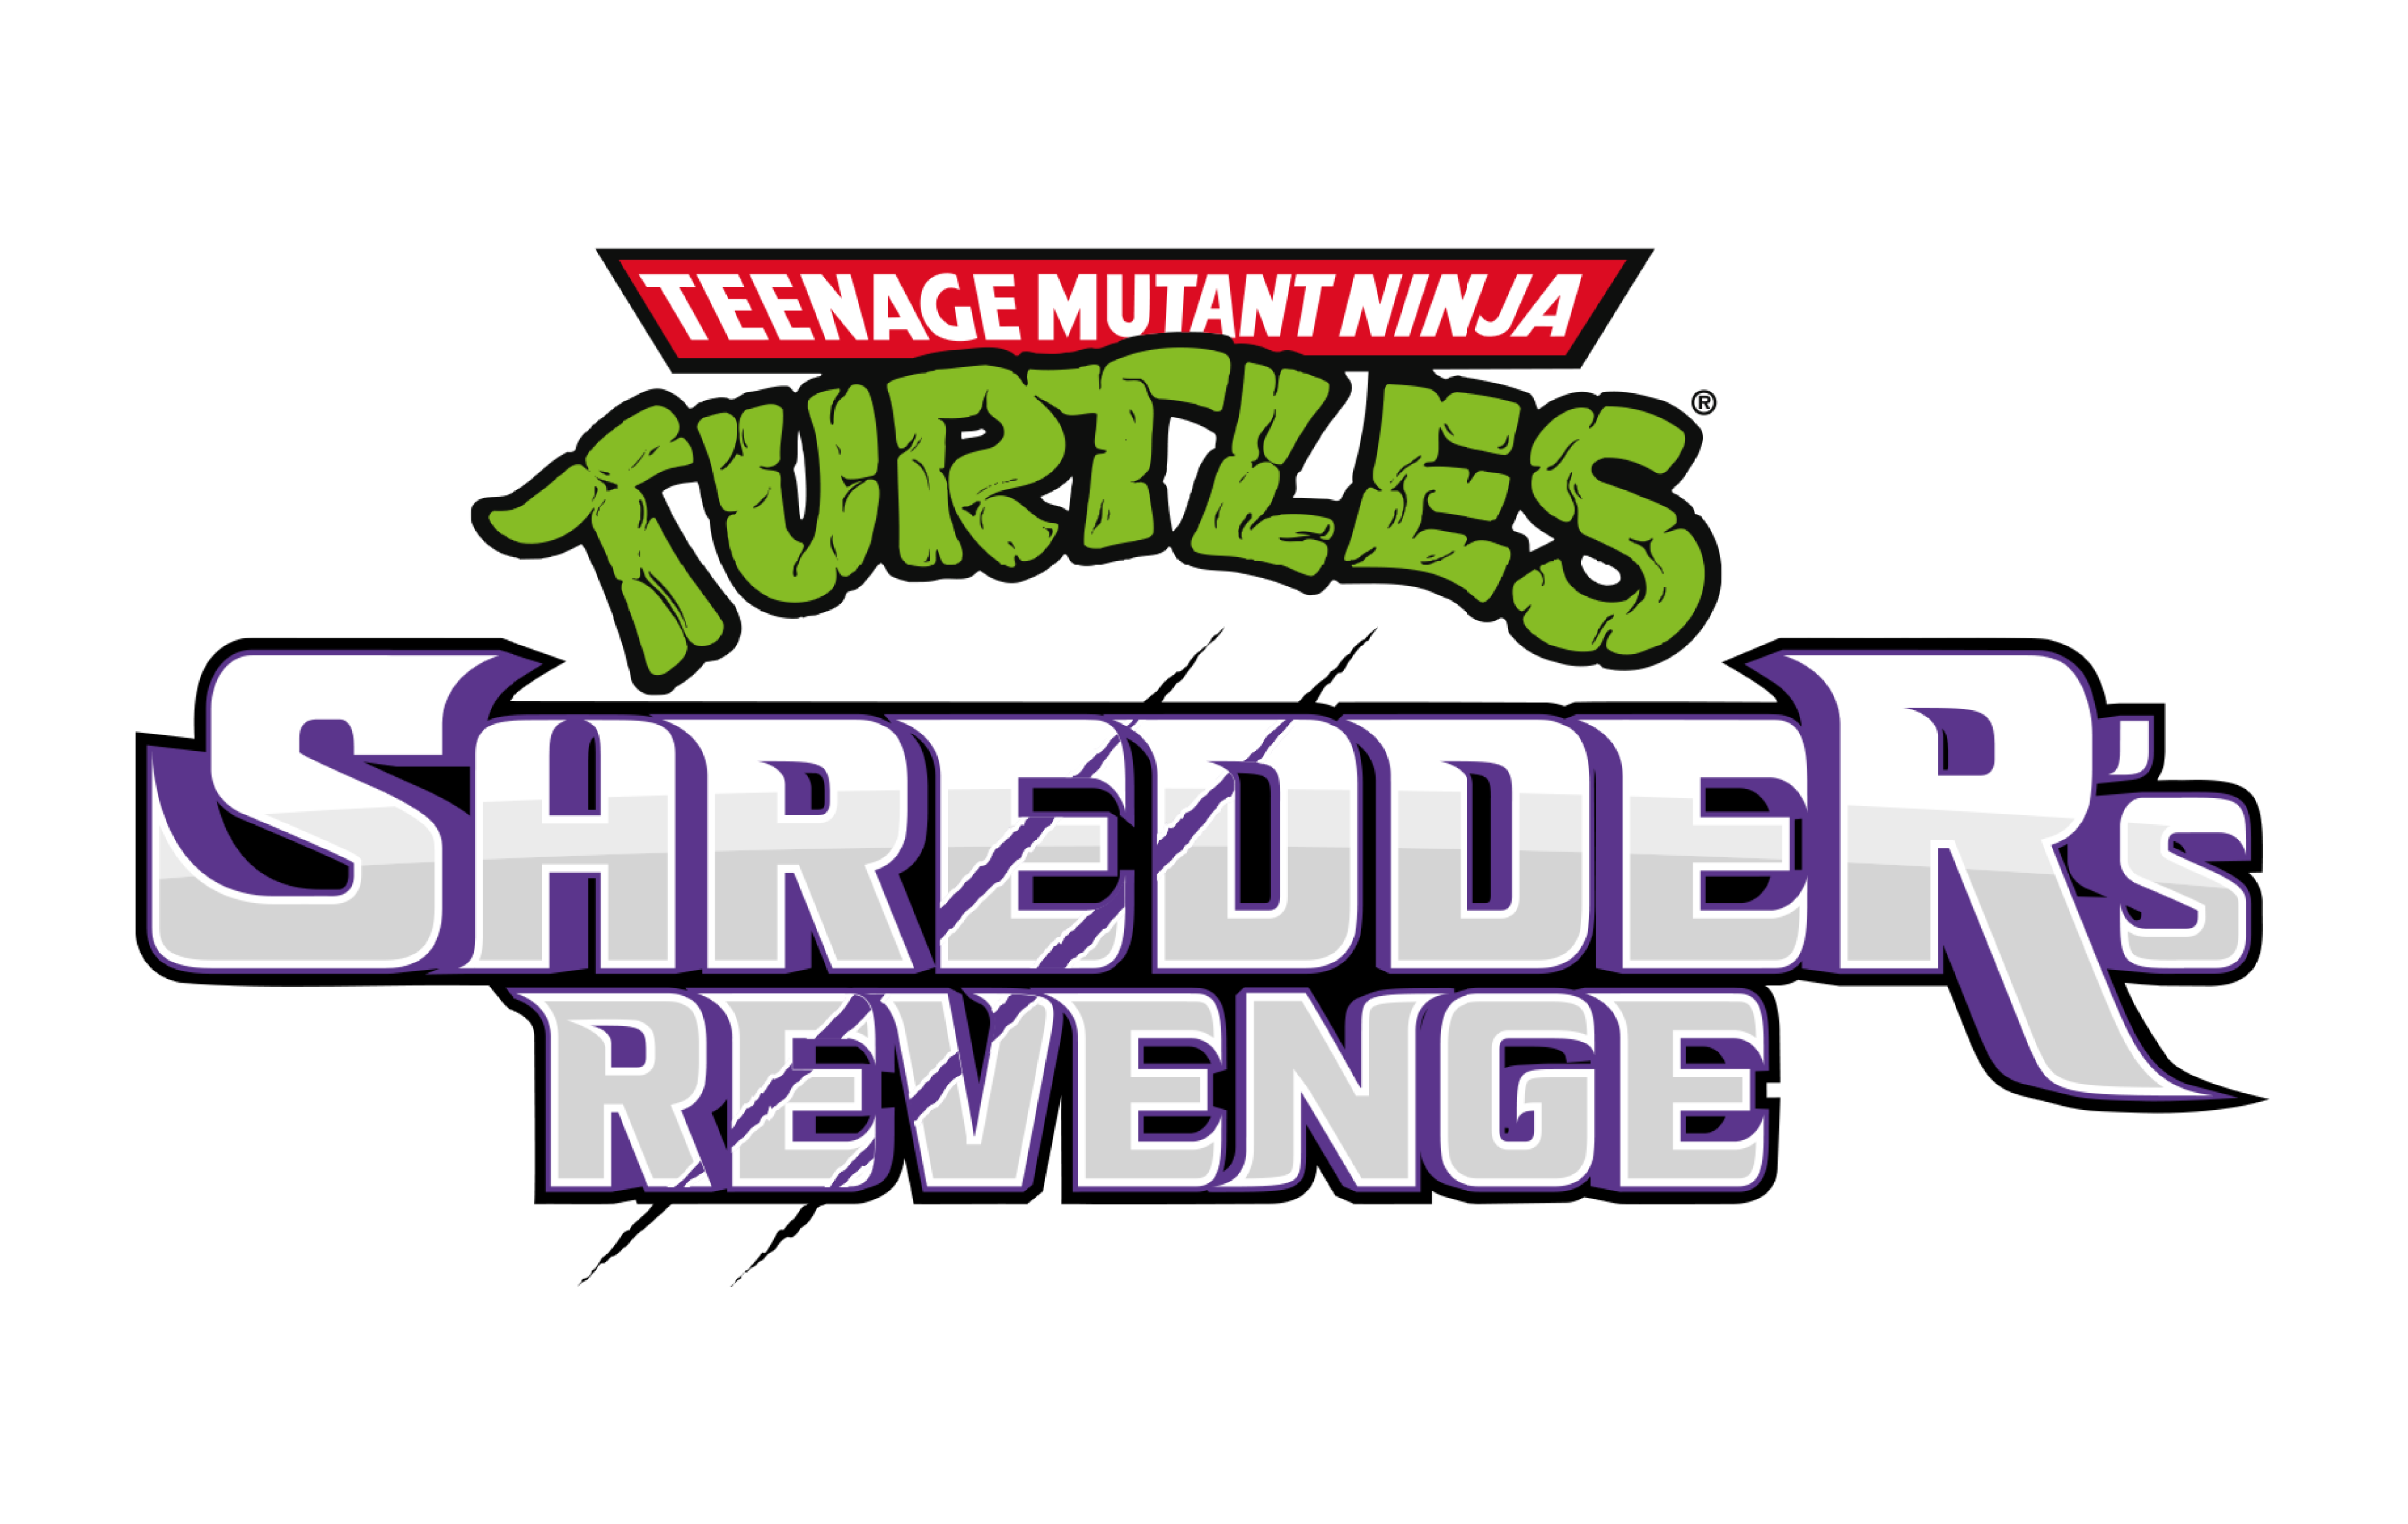 tnmt shredder's revenge logo